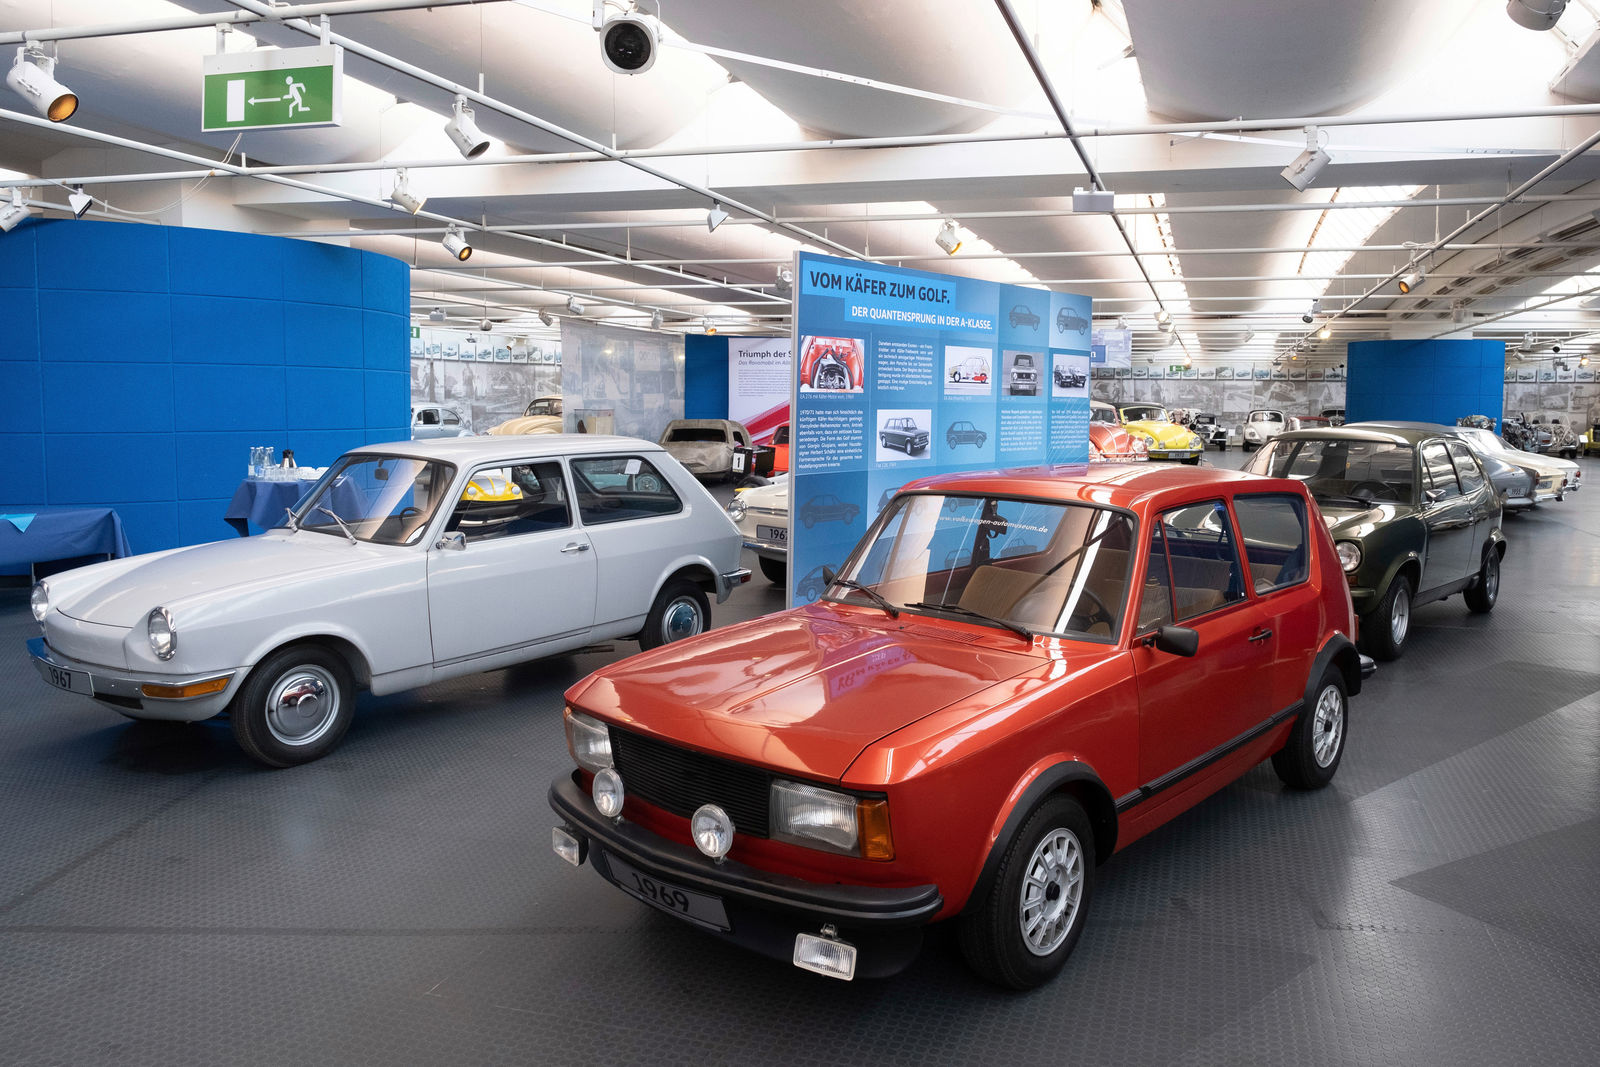 AutoMuseum Volkswagen: Sonderschau „Generationswechsel. Der Quantensprung zu den neuen Wassergekühlten.“